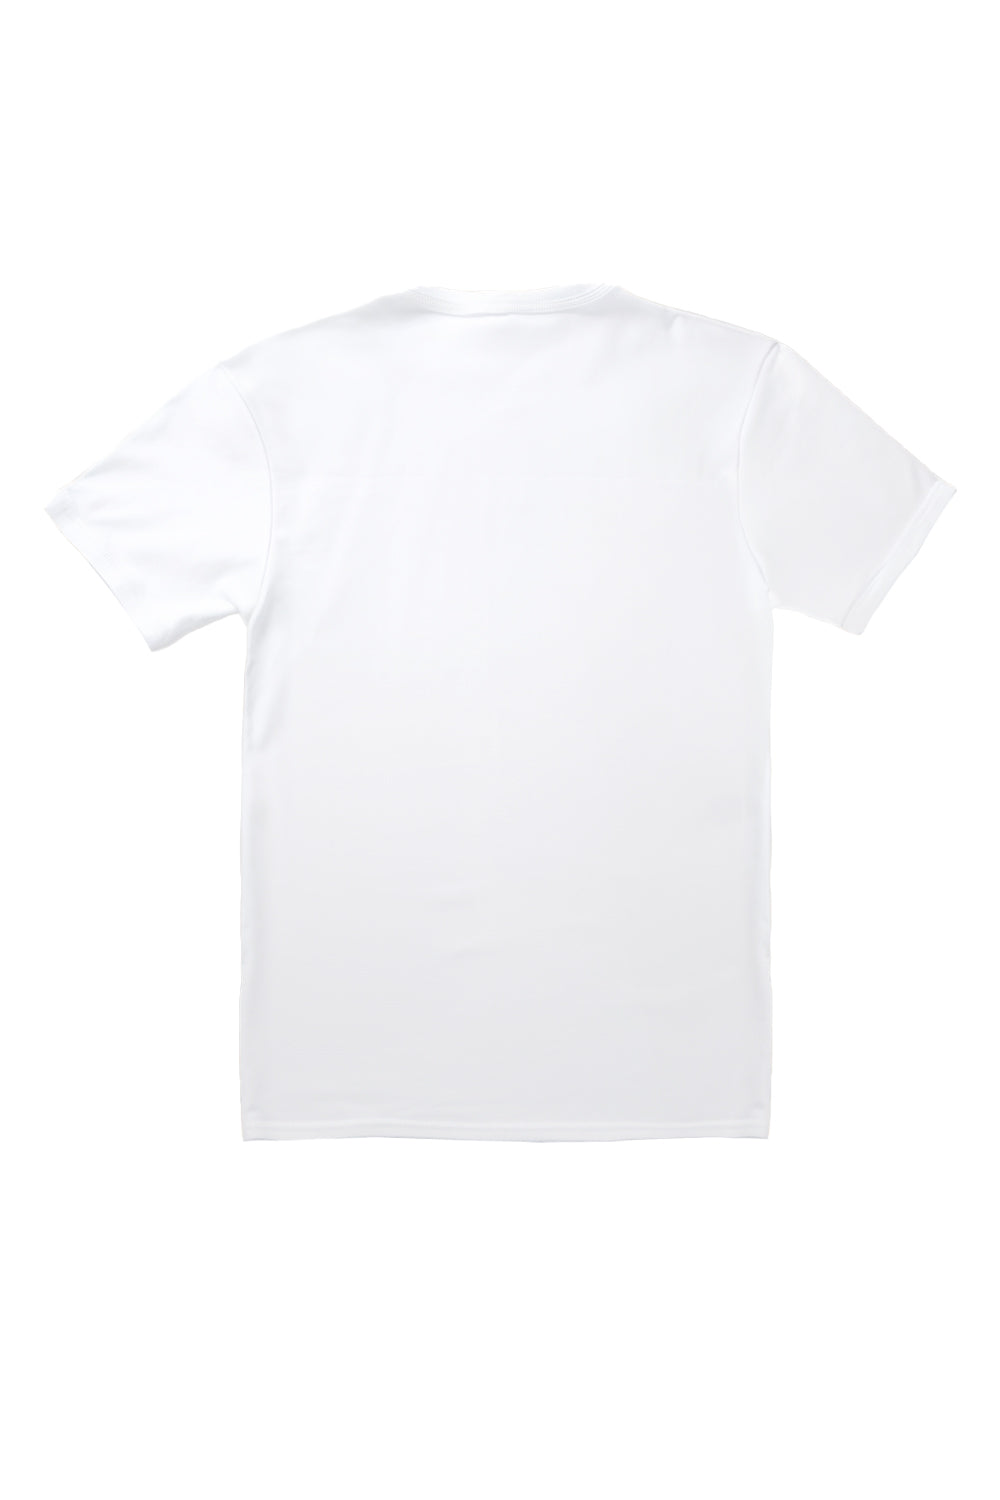 Howdy T-Shirt in White (Custom Packs)